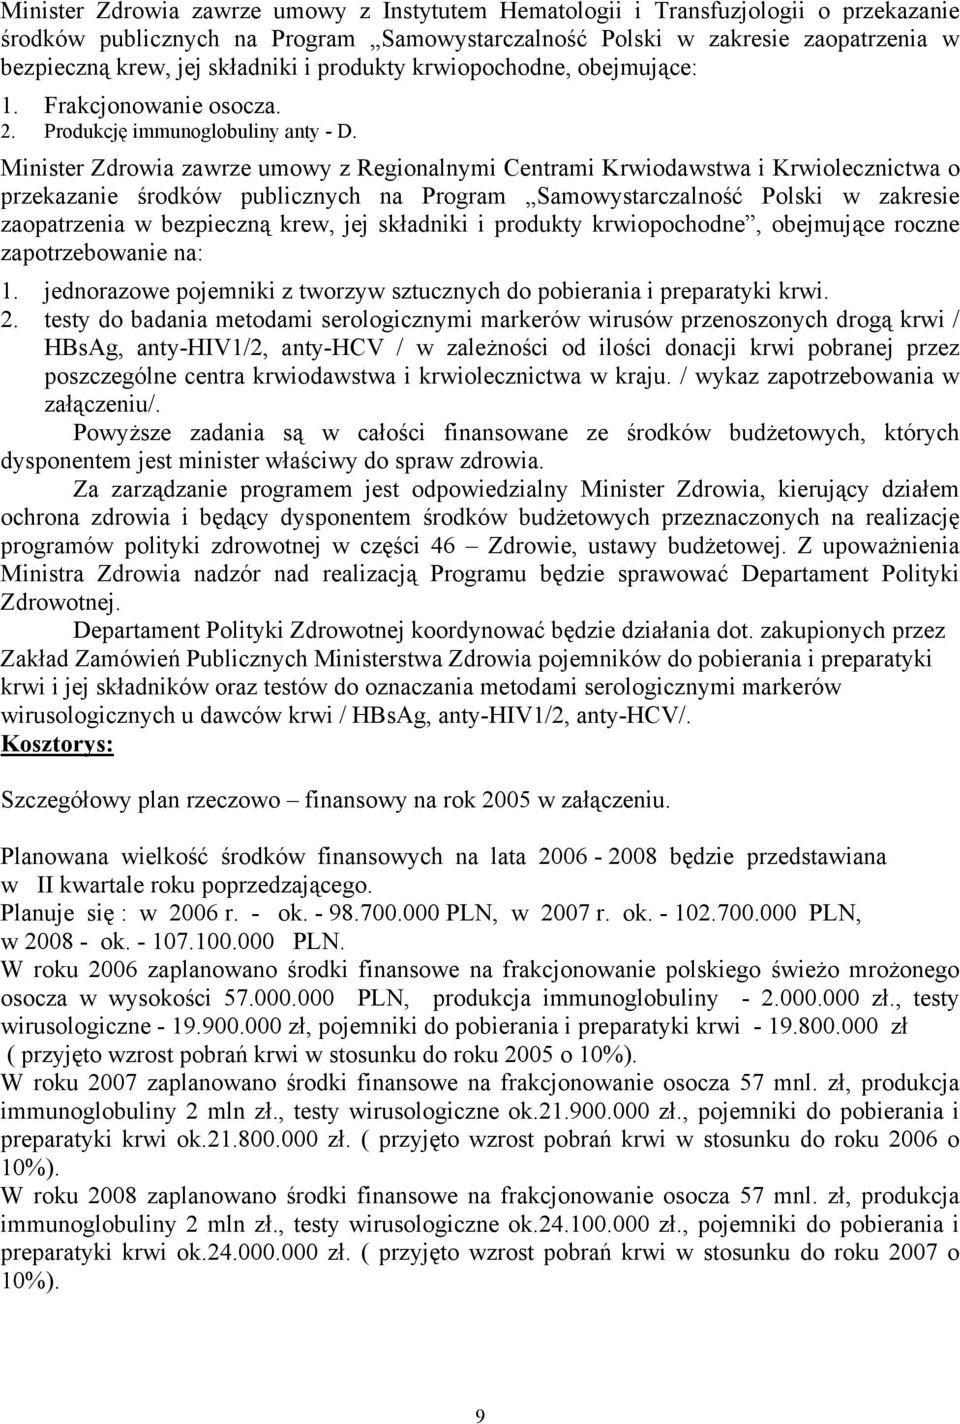 Minister Zdrowia zawrze umowy z Regionalnymi Centrami Krwiodawstwa i Krwiolecznictwa o przekazanie środków publicznych na Program Samowystarczalność Polski w zakresie zaopatrzenia w bezpieczną krew,